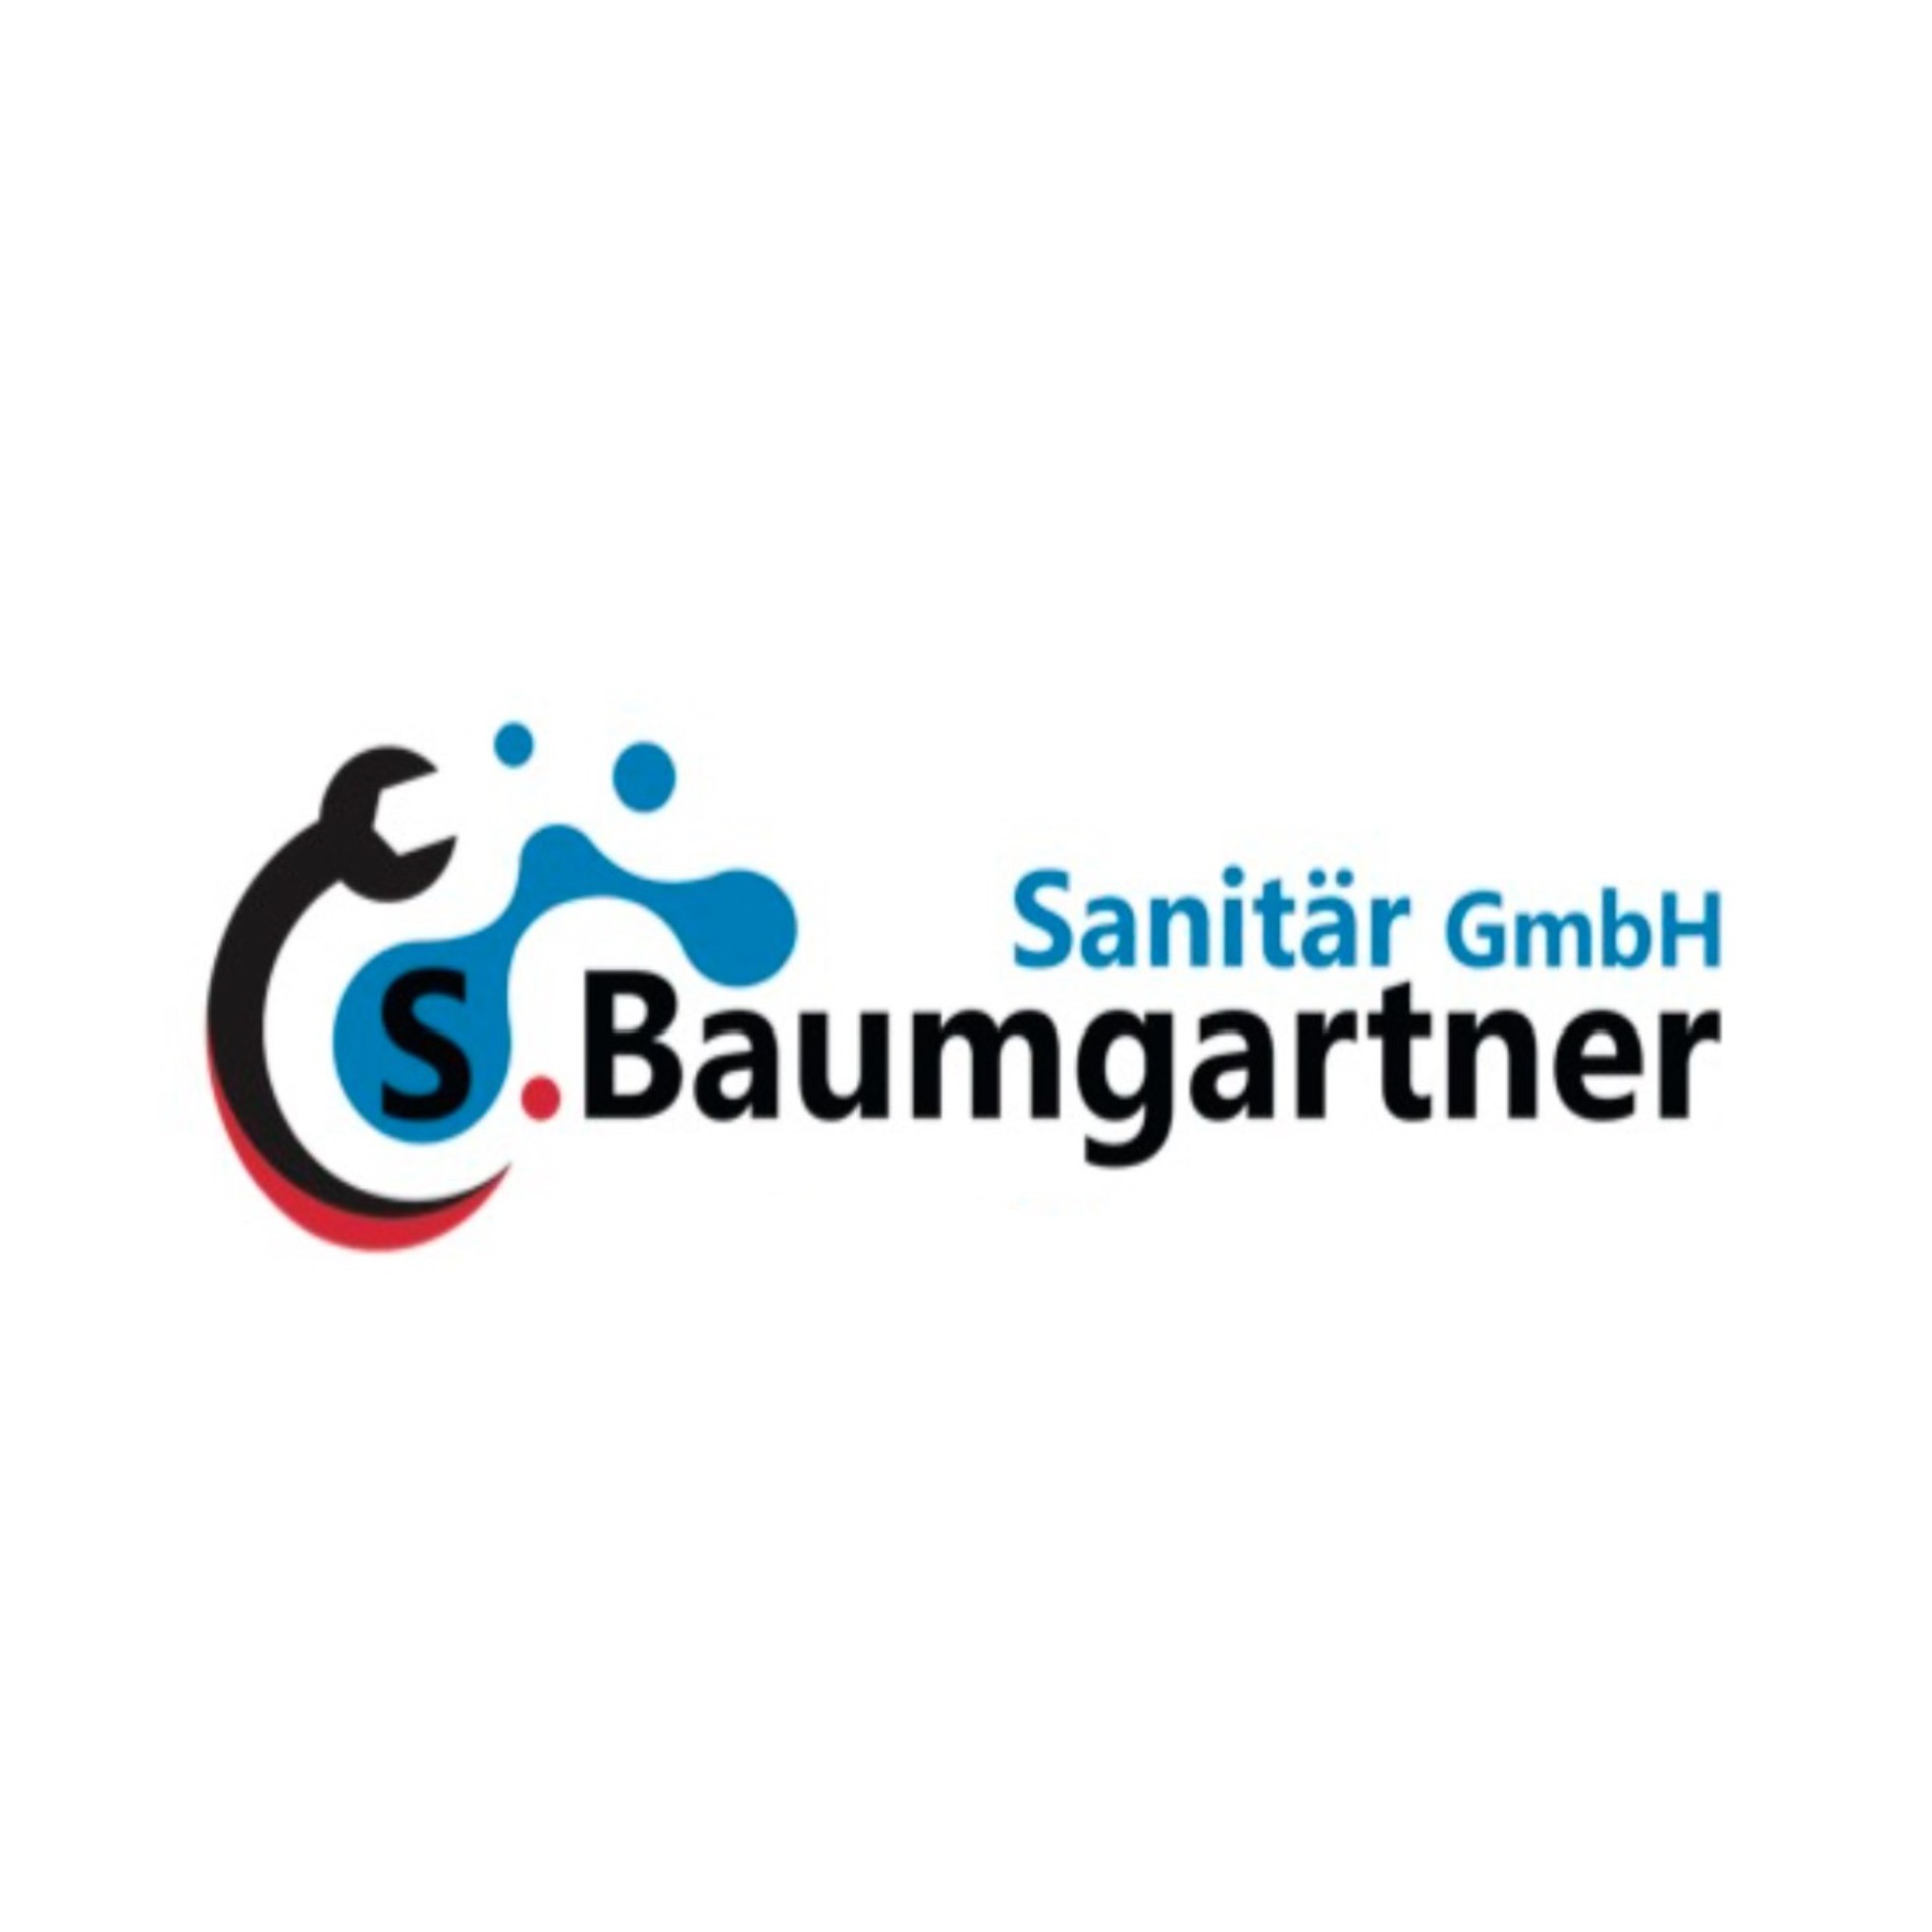 S. Baumgartner Sanitär GmbH Logo